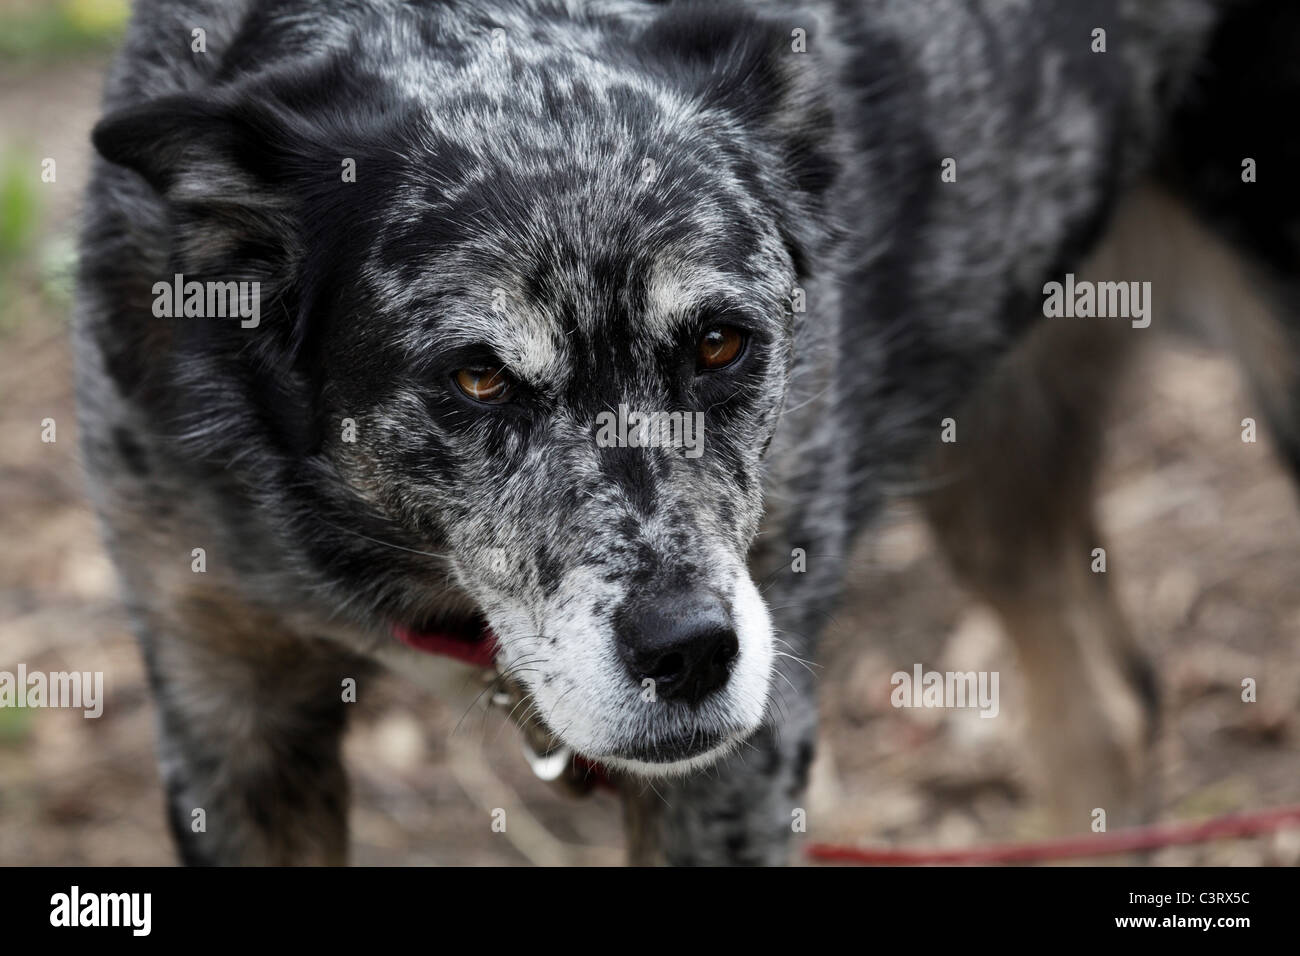 Blue Heeler Australian Shepherd Mix Dog Looking Sleepy Stock Photo Alamy